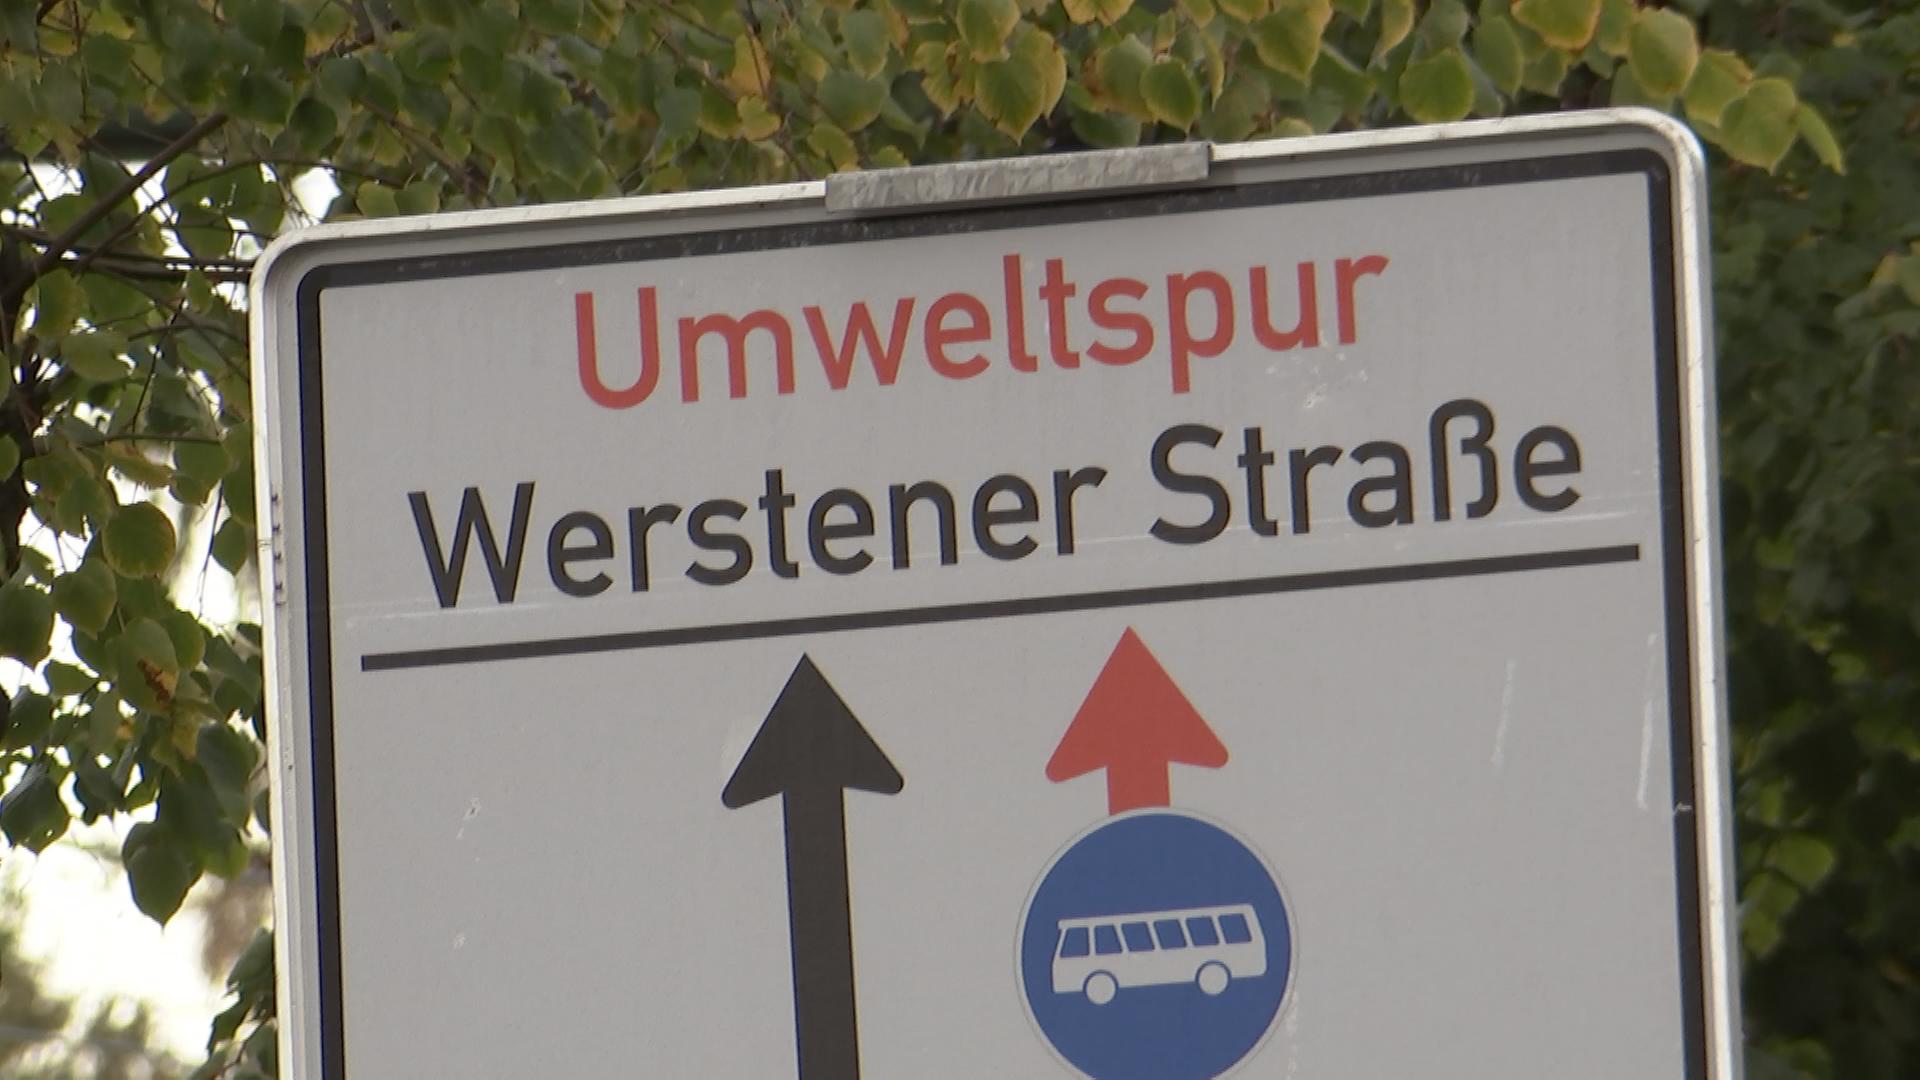 Straßenschild mit Aufschrift "Umweltspur Werstener Straße"